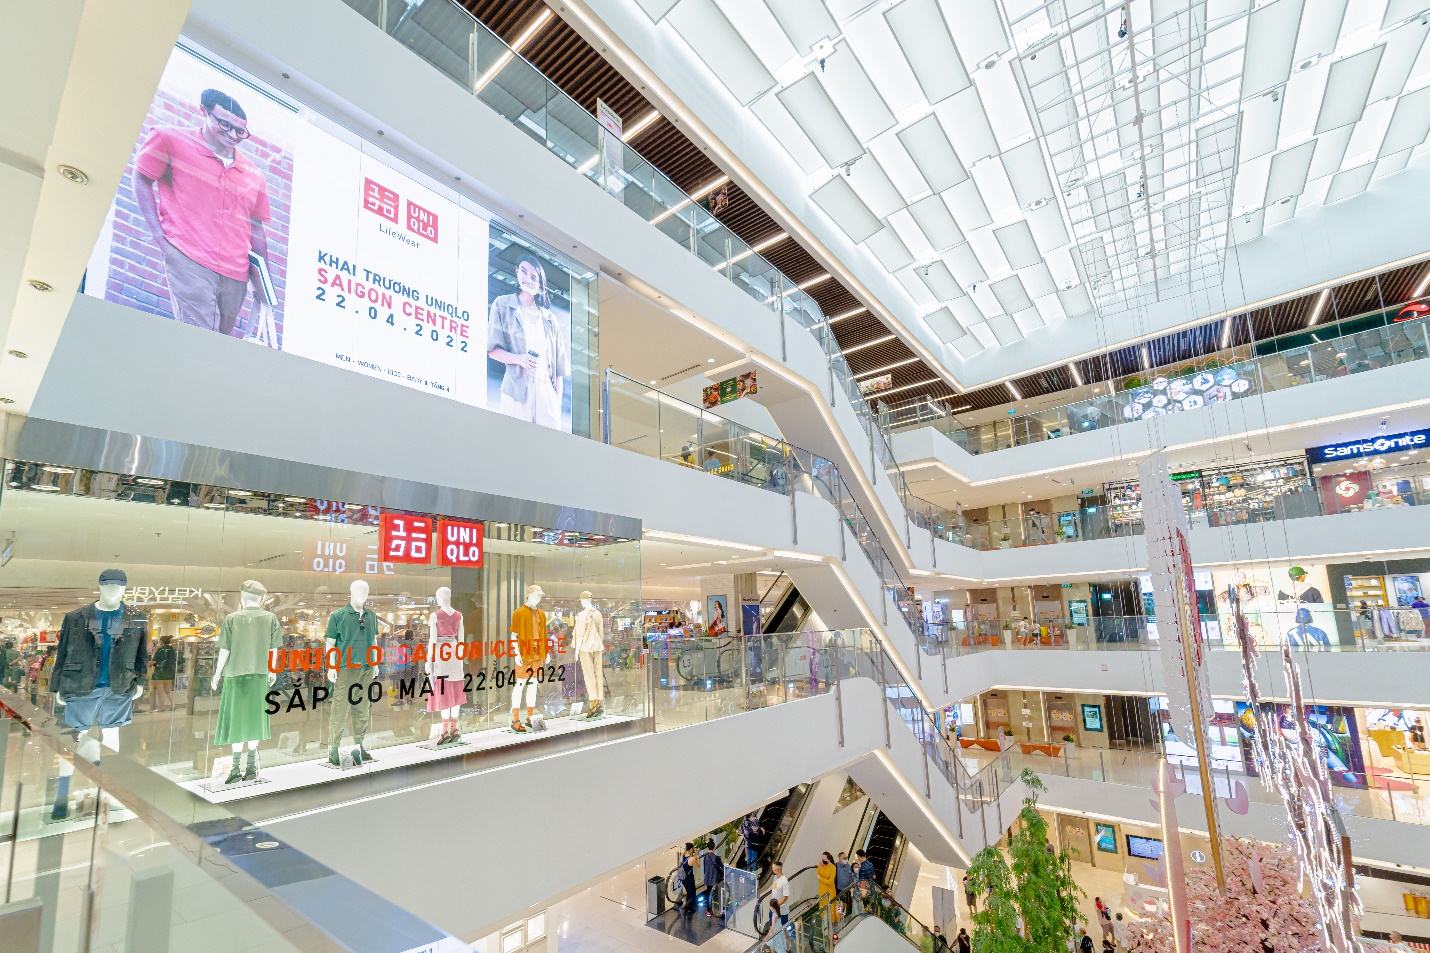 Ít ngày trước khai trương vào 22/4, cửa hàng UNIQLO Saigon Centre chiếm sóng với loạt visual “sang xịn mịn” - Ảnh 2.